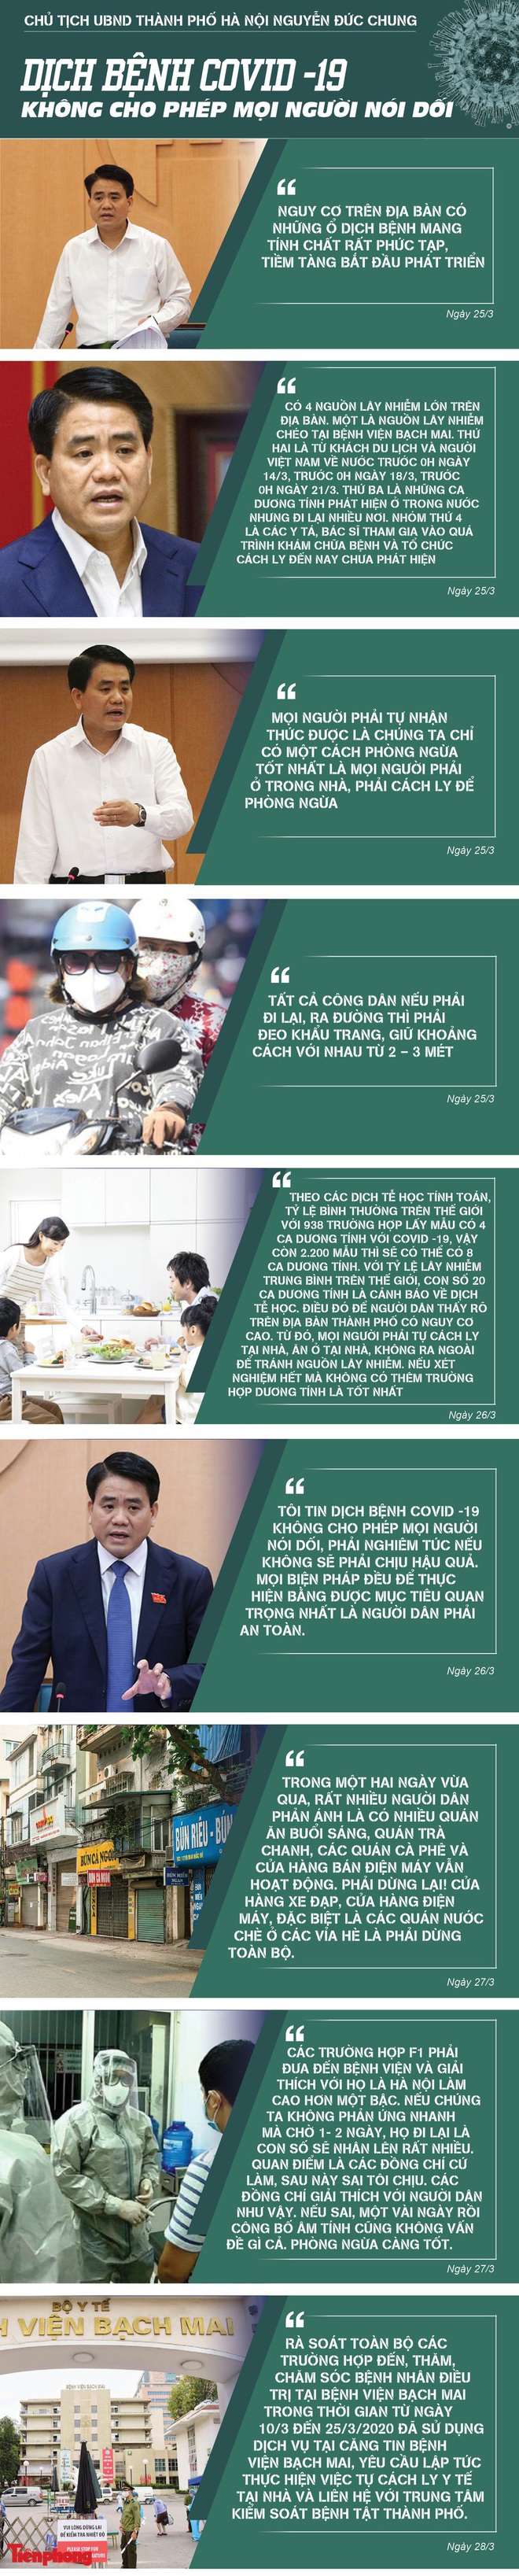 [Dịch Covid-19 ngày 30/3] 3 bệnh nhân nặng đang tiến triển tốt lên - Nhiều chỉ đạo quyết liệt của Chủ tịch Hà Nội Nguyễn Đức Chung - Ảnh 1.